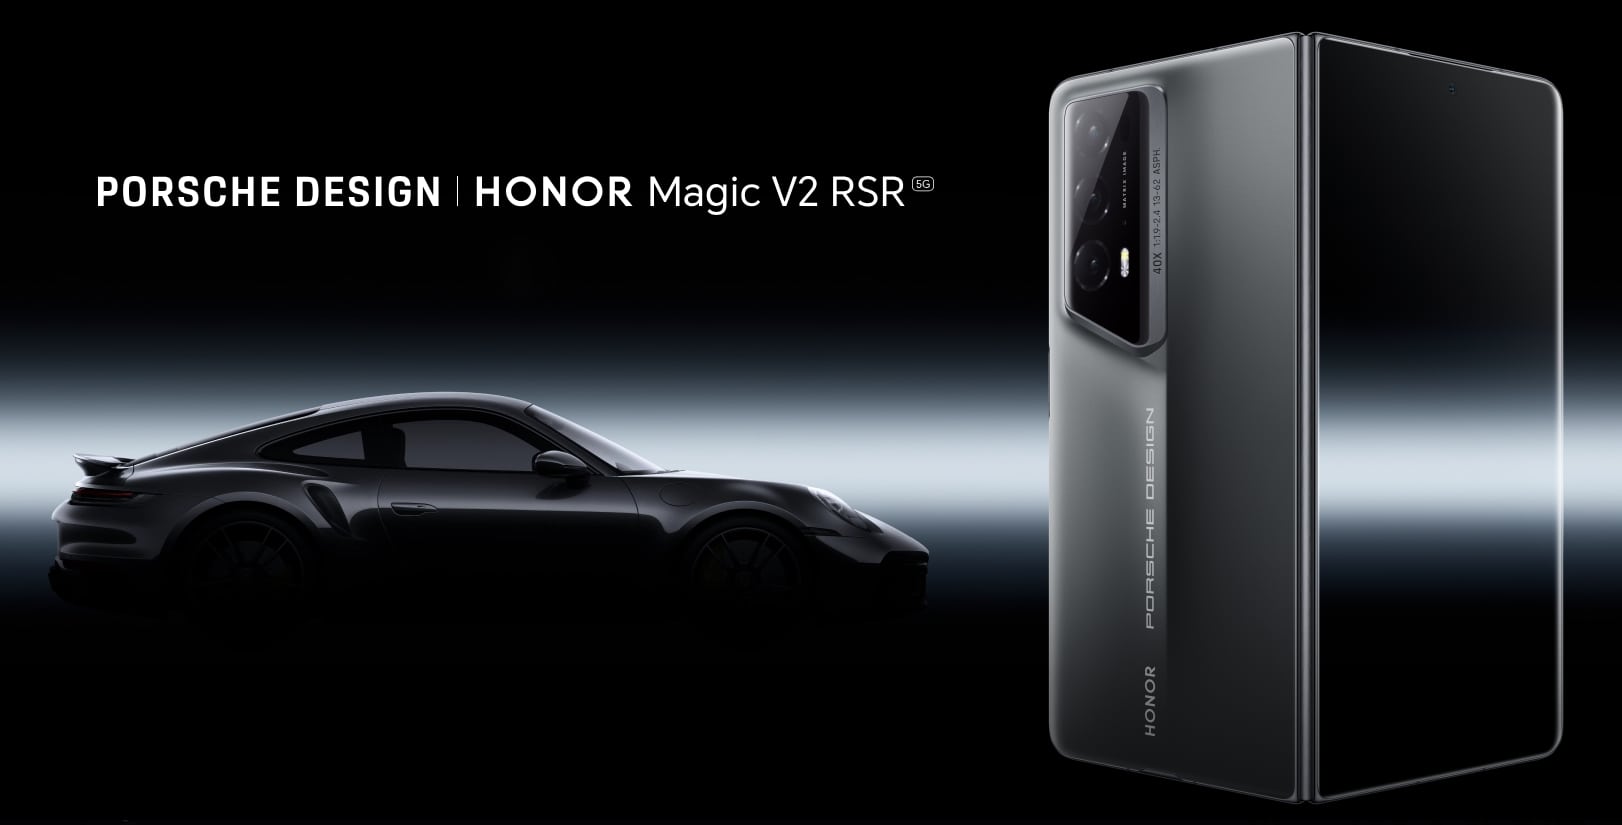 Deleita tus ojos con el Porsche Design HONOR Magic V2 RSR